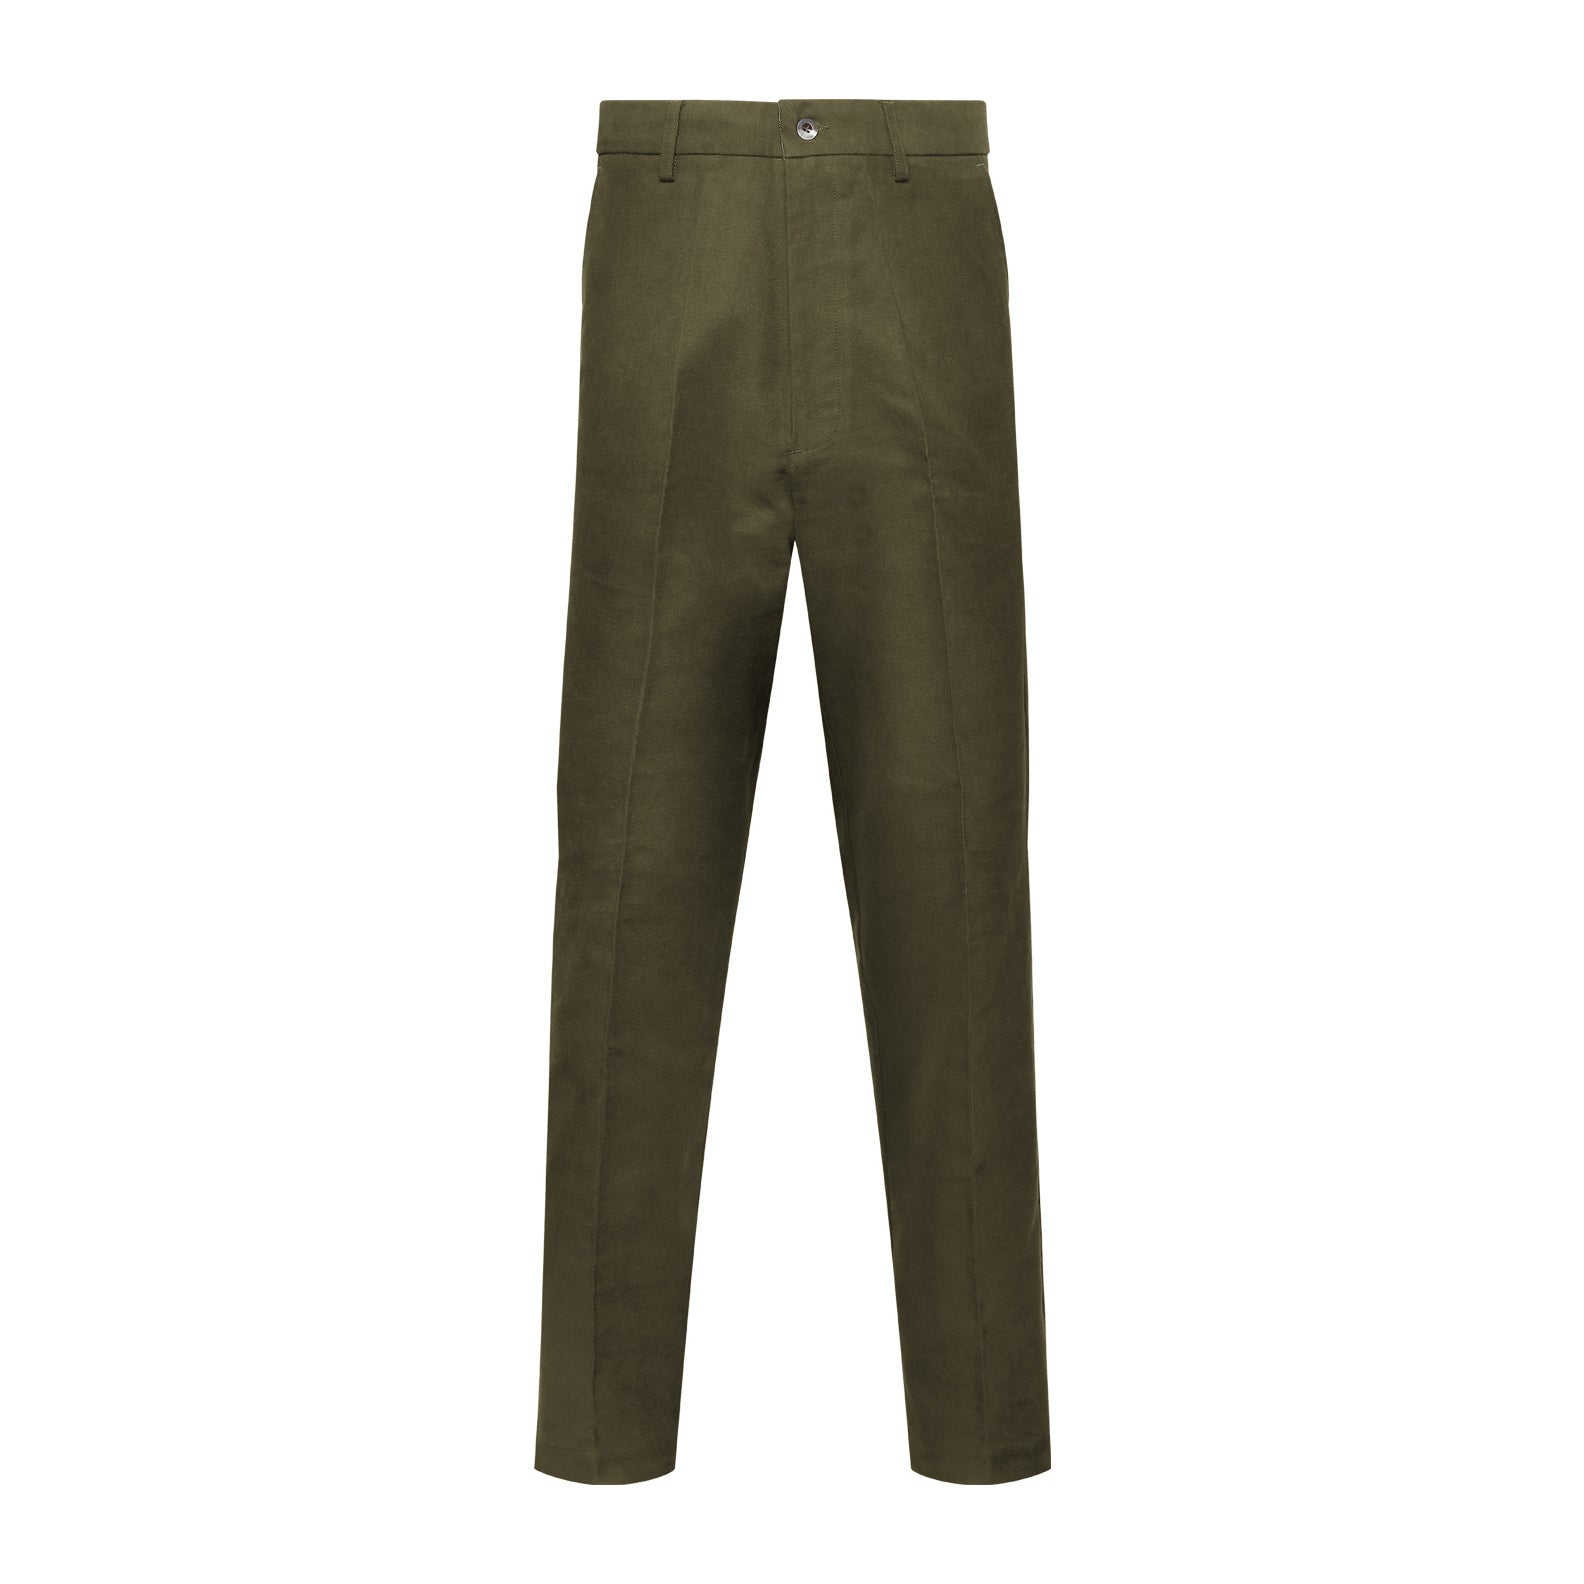 Men's Moleskin Trousers Olive Green or Tan Beige Cotton Trouser Pants by  Rydale | eBay